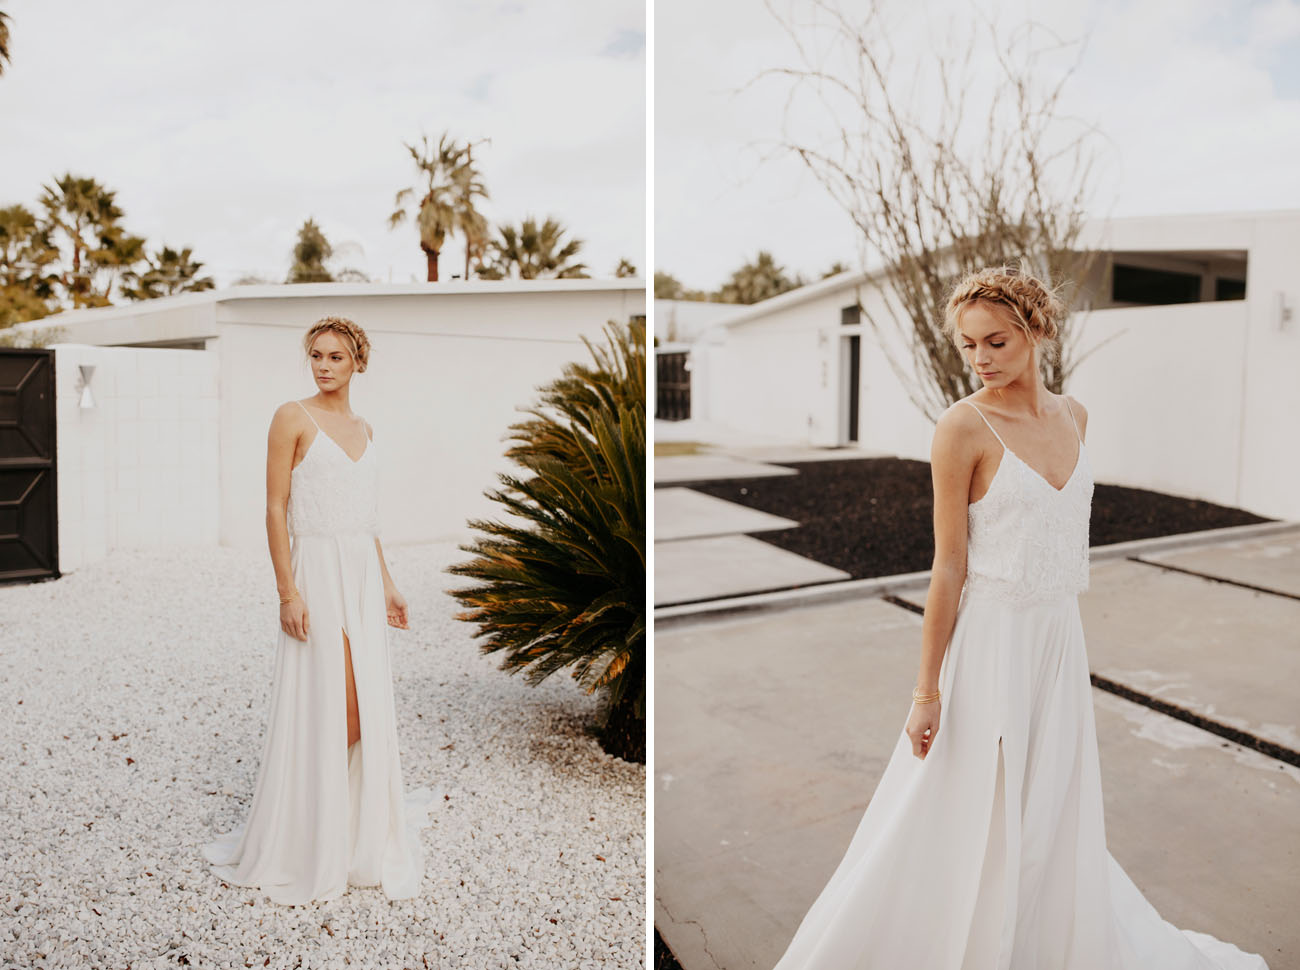 Коллекция свадебных платьев Sarah Seven весна 2017